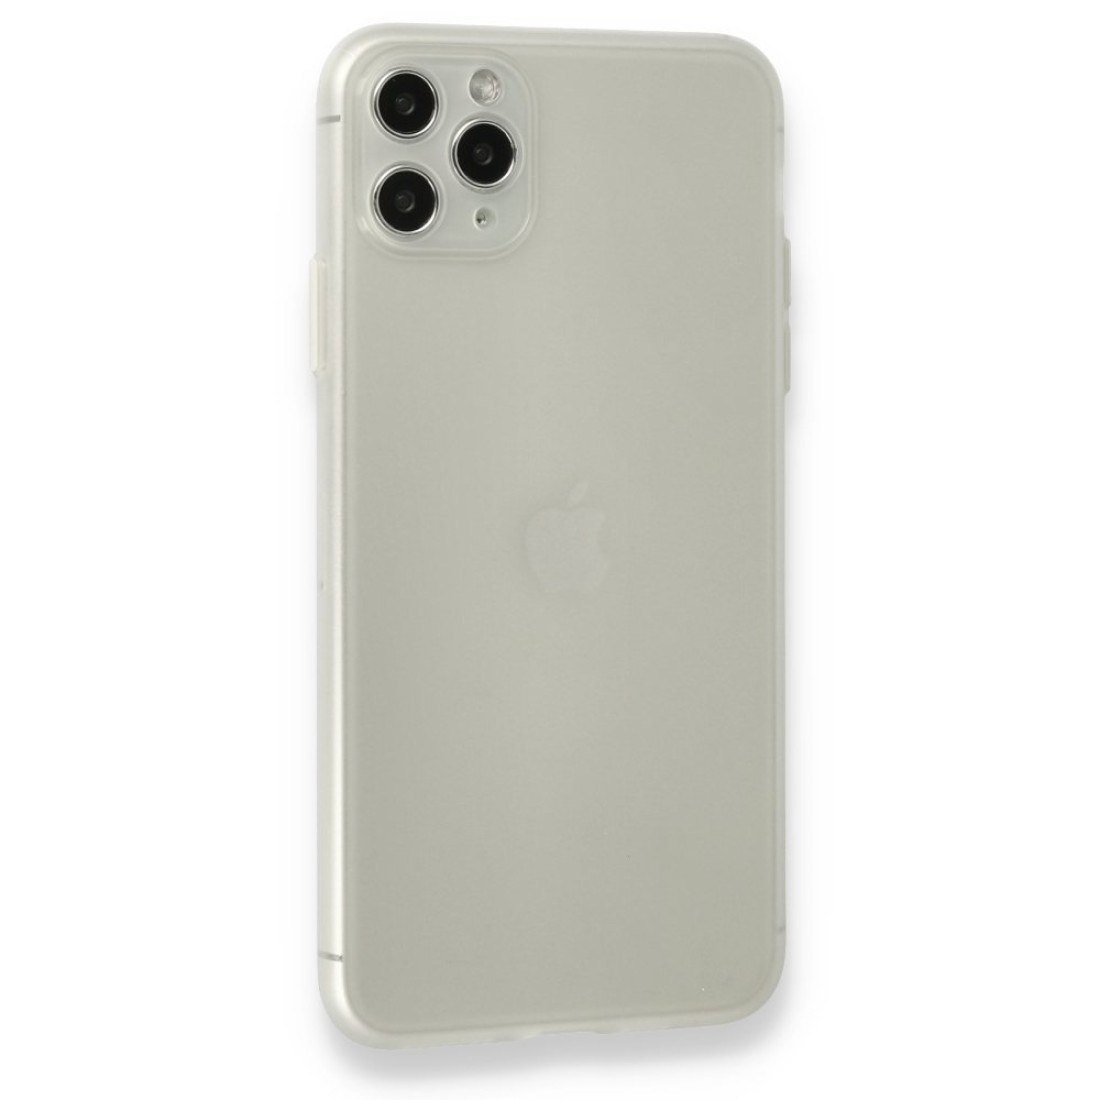 Apple iPhone 11 Pro Kılıf Puma Silikon - Şeffaf